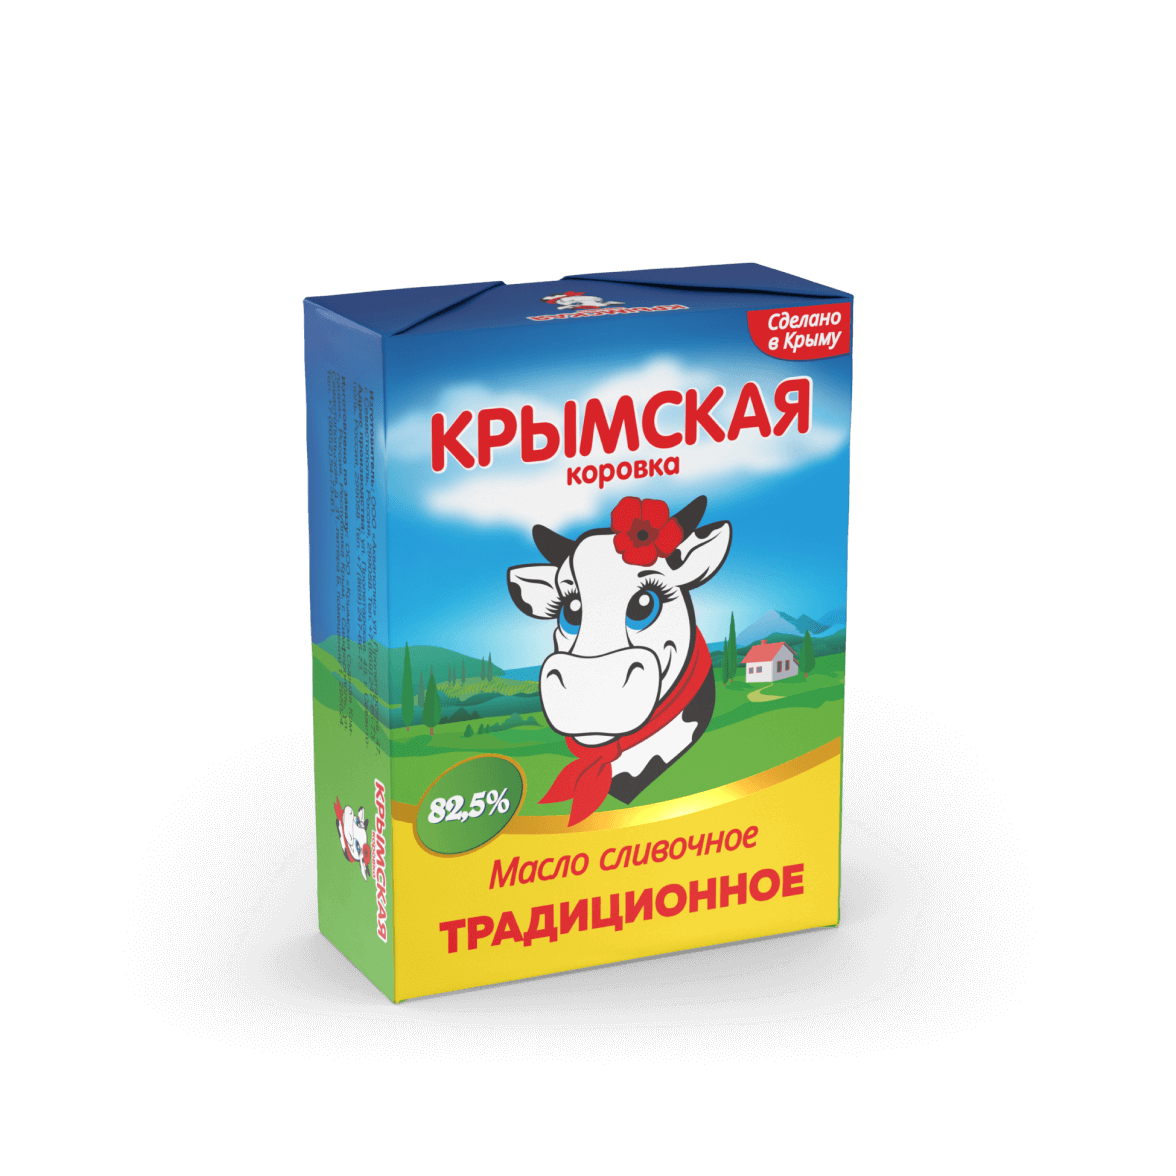 Масло сладко-сливочное несоленое Традиционное 82,5%, фас. 180гр., ТМ "Крымская коровка"